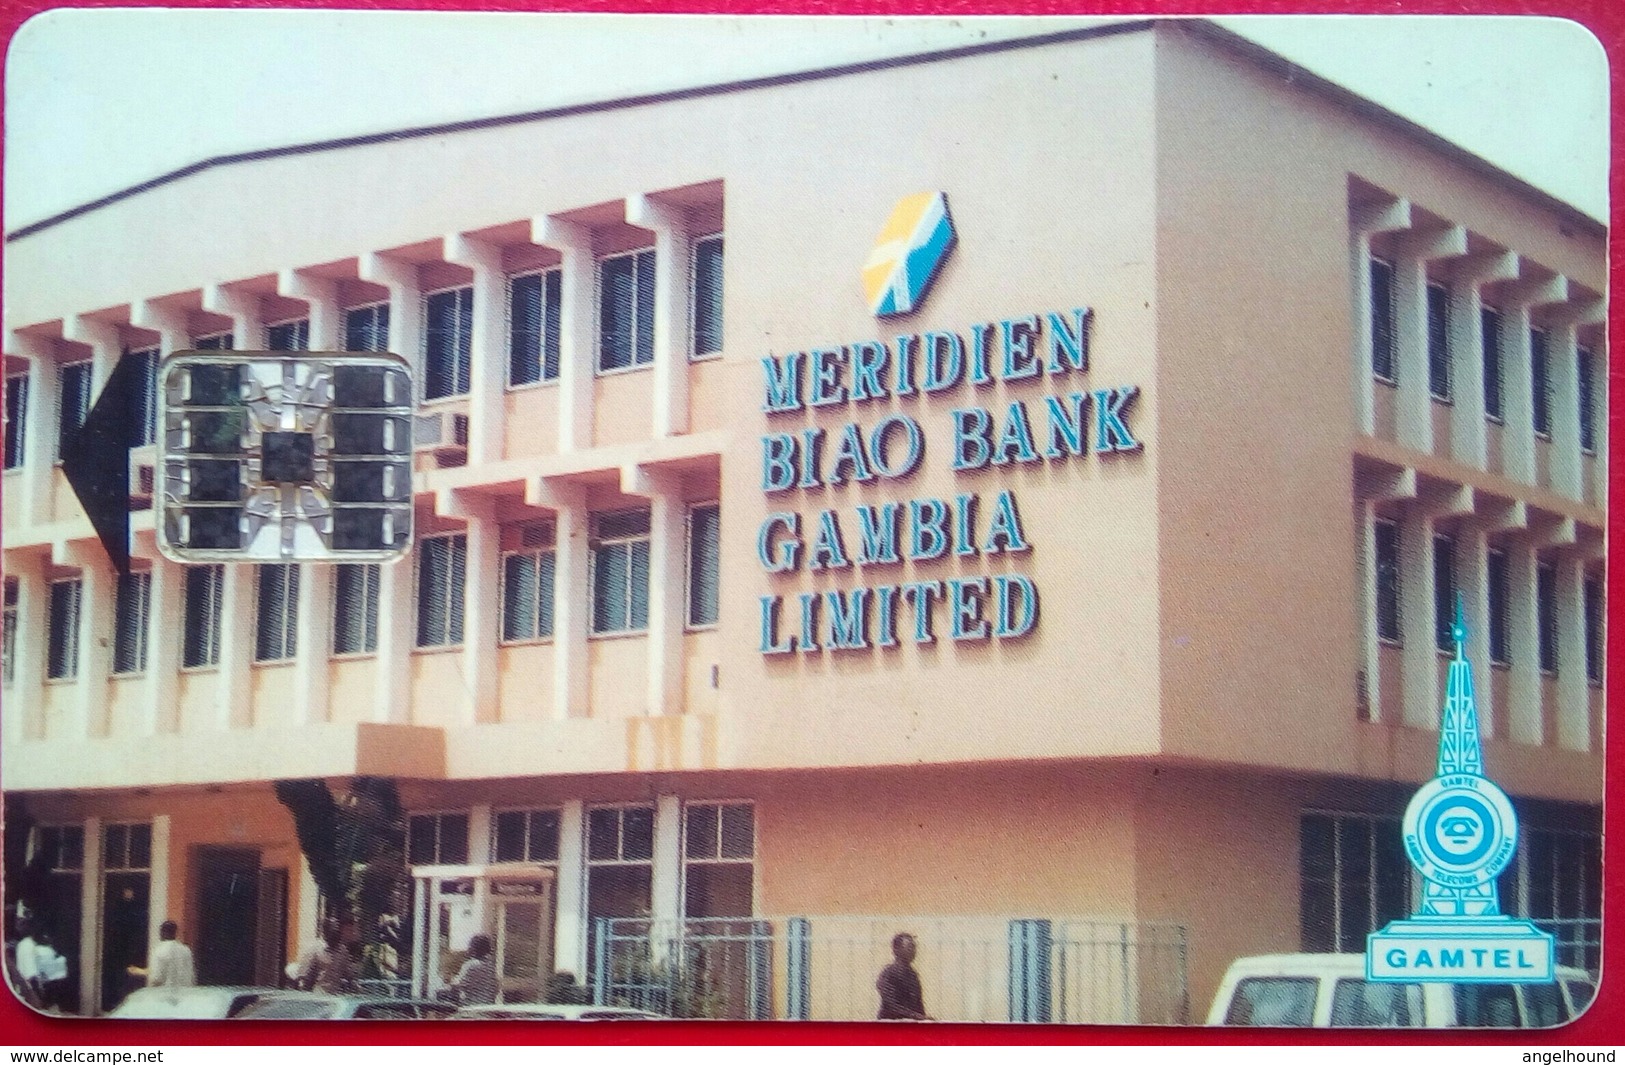 Meridien Bank 60 Units Merry Christmas - Gambie